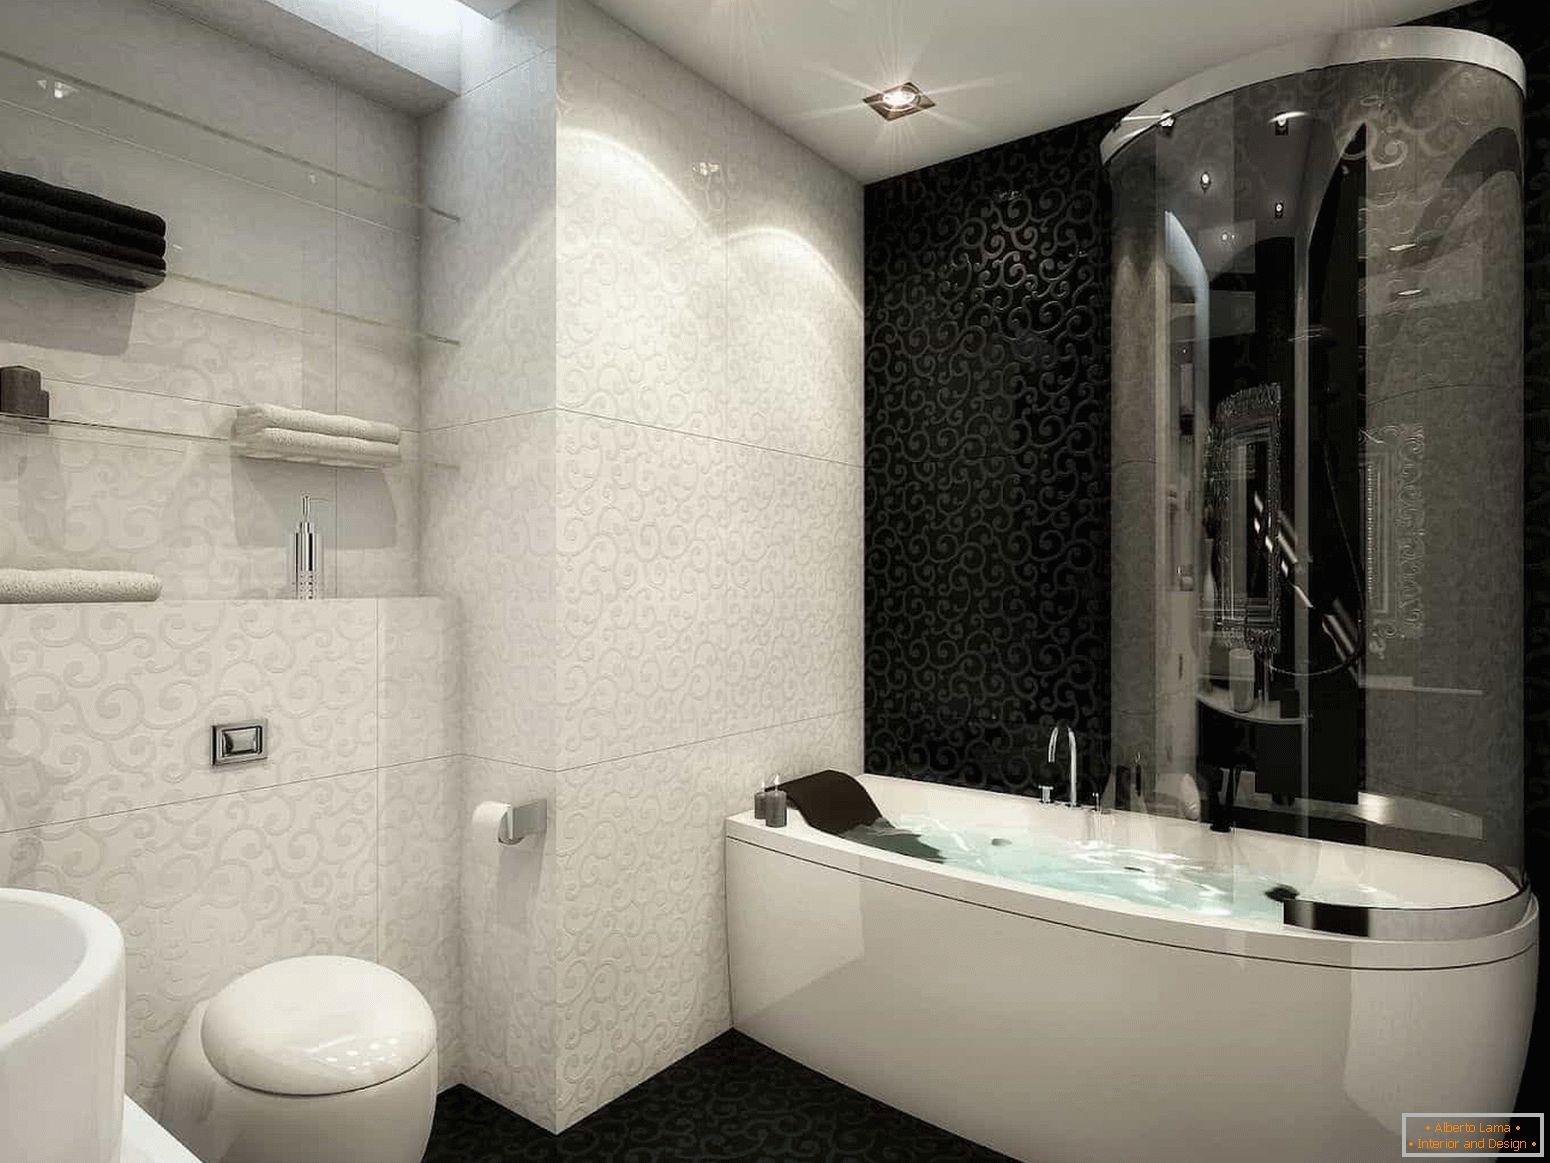 La combinación de azulejos blancos y negros en el baño